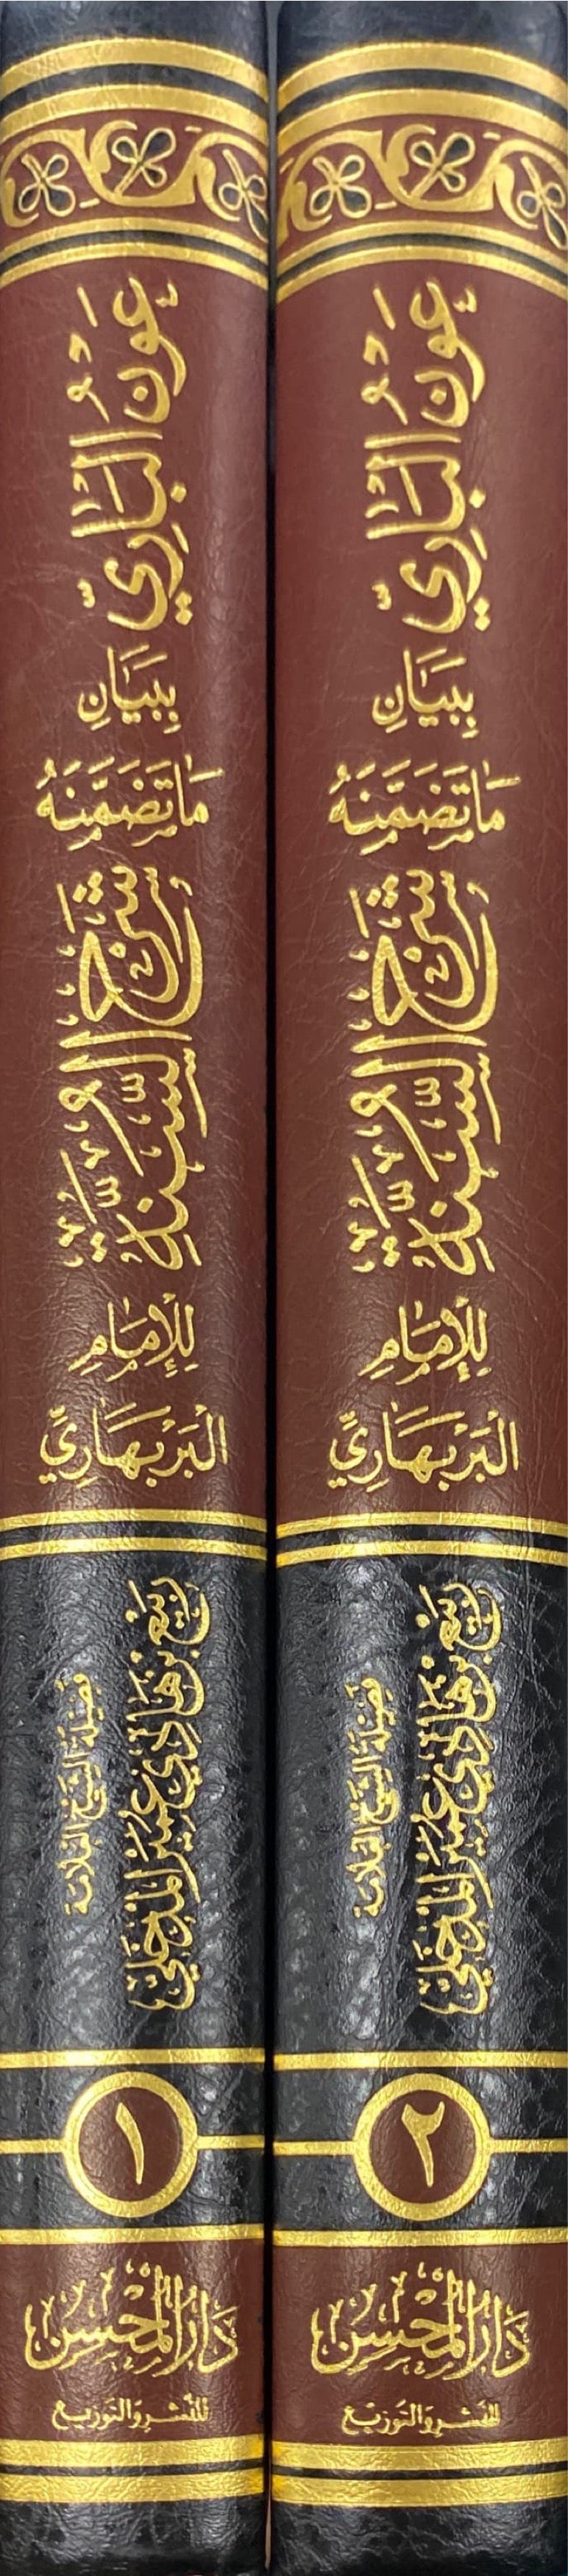 عون الباري ببيان ما تضمنه شرح السنة للامام البربهاري     Awnul Baari (2 Volume Set)